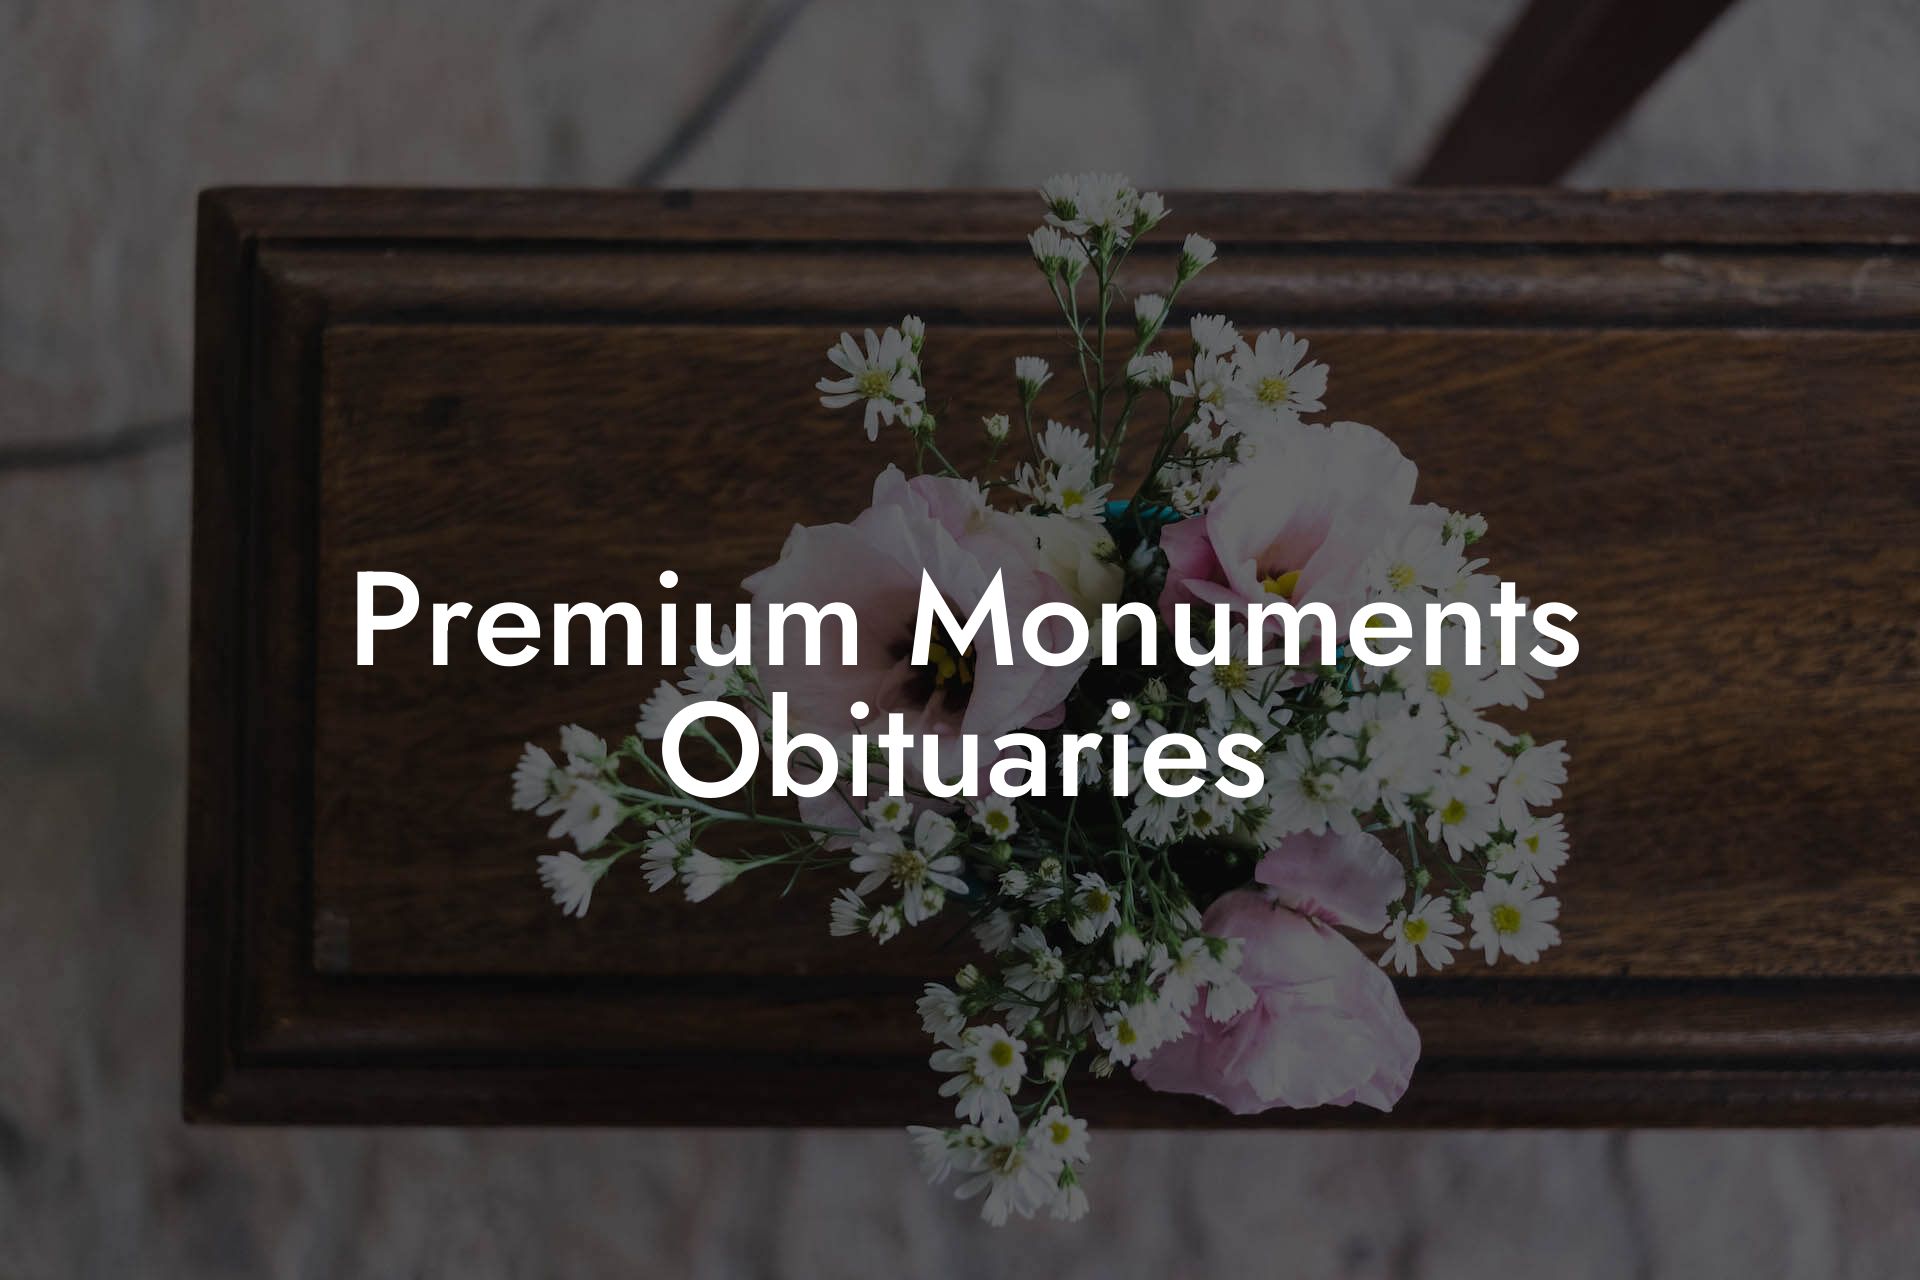 Premium Monuments Obituaries